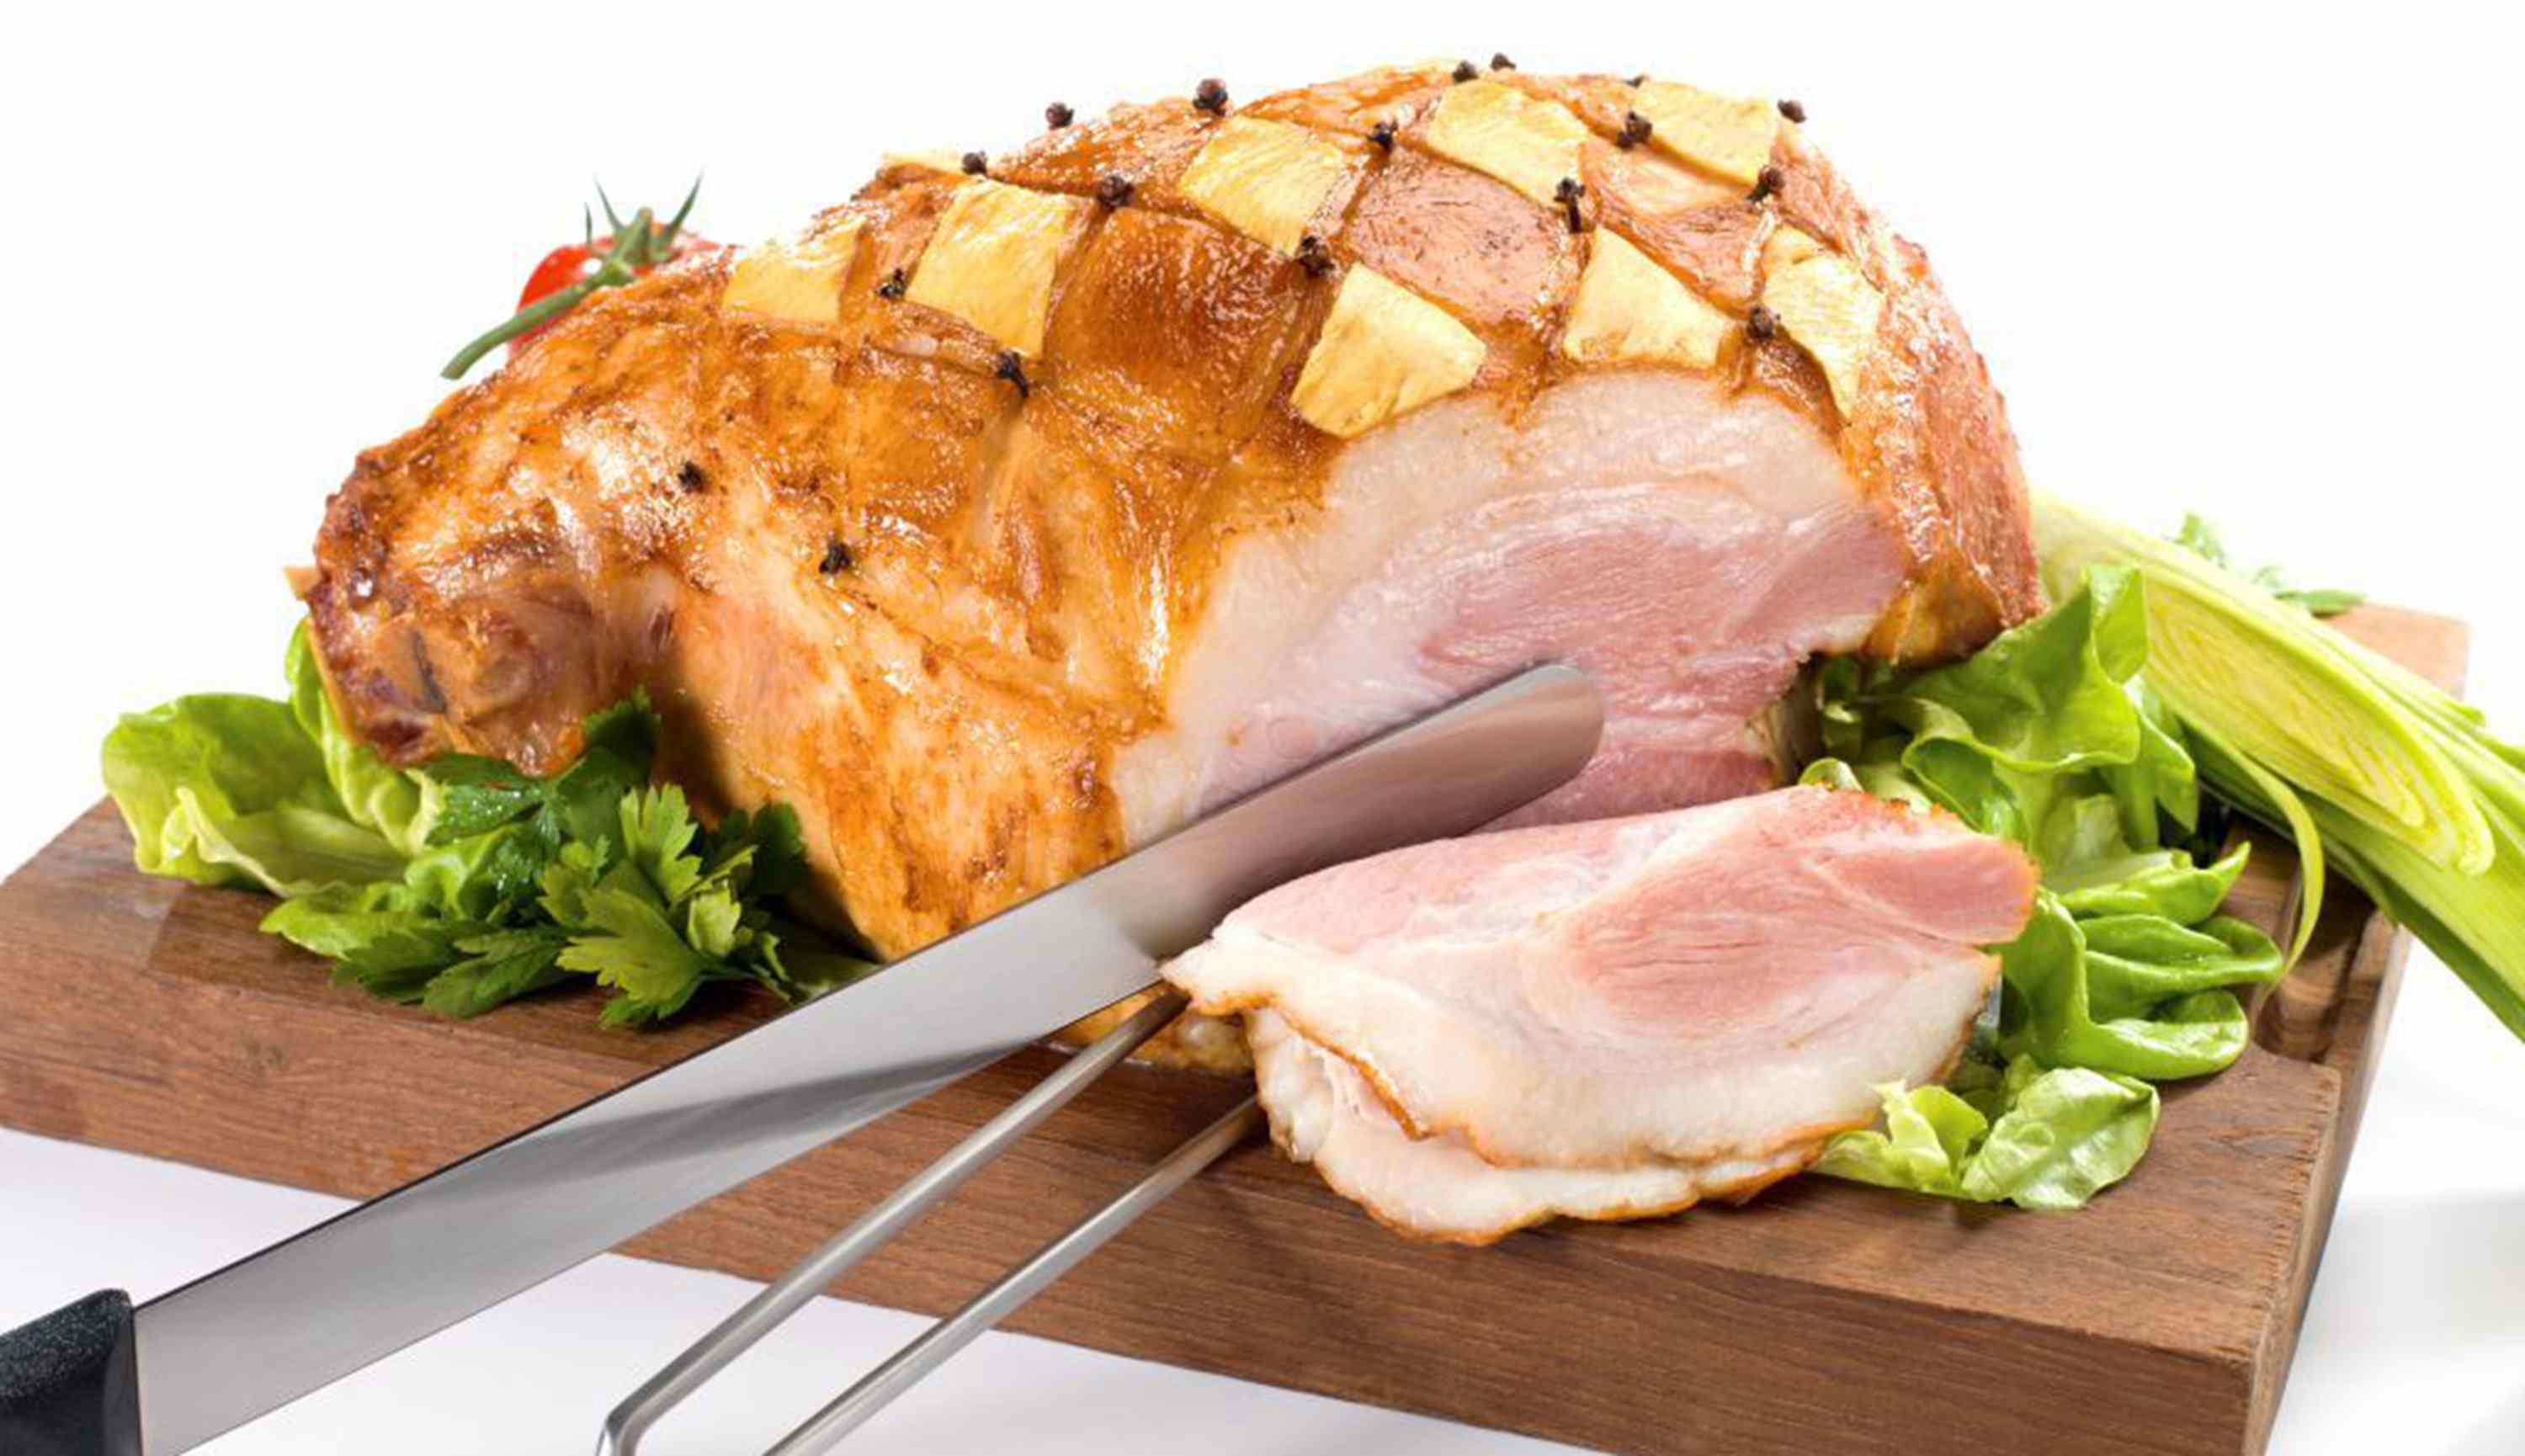 Grand Orbit: Barbecued Ham